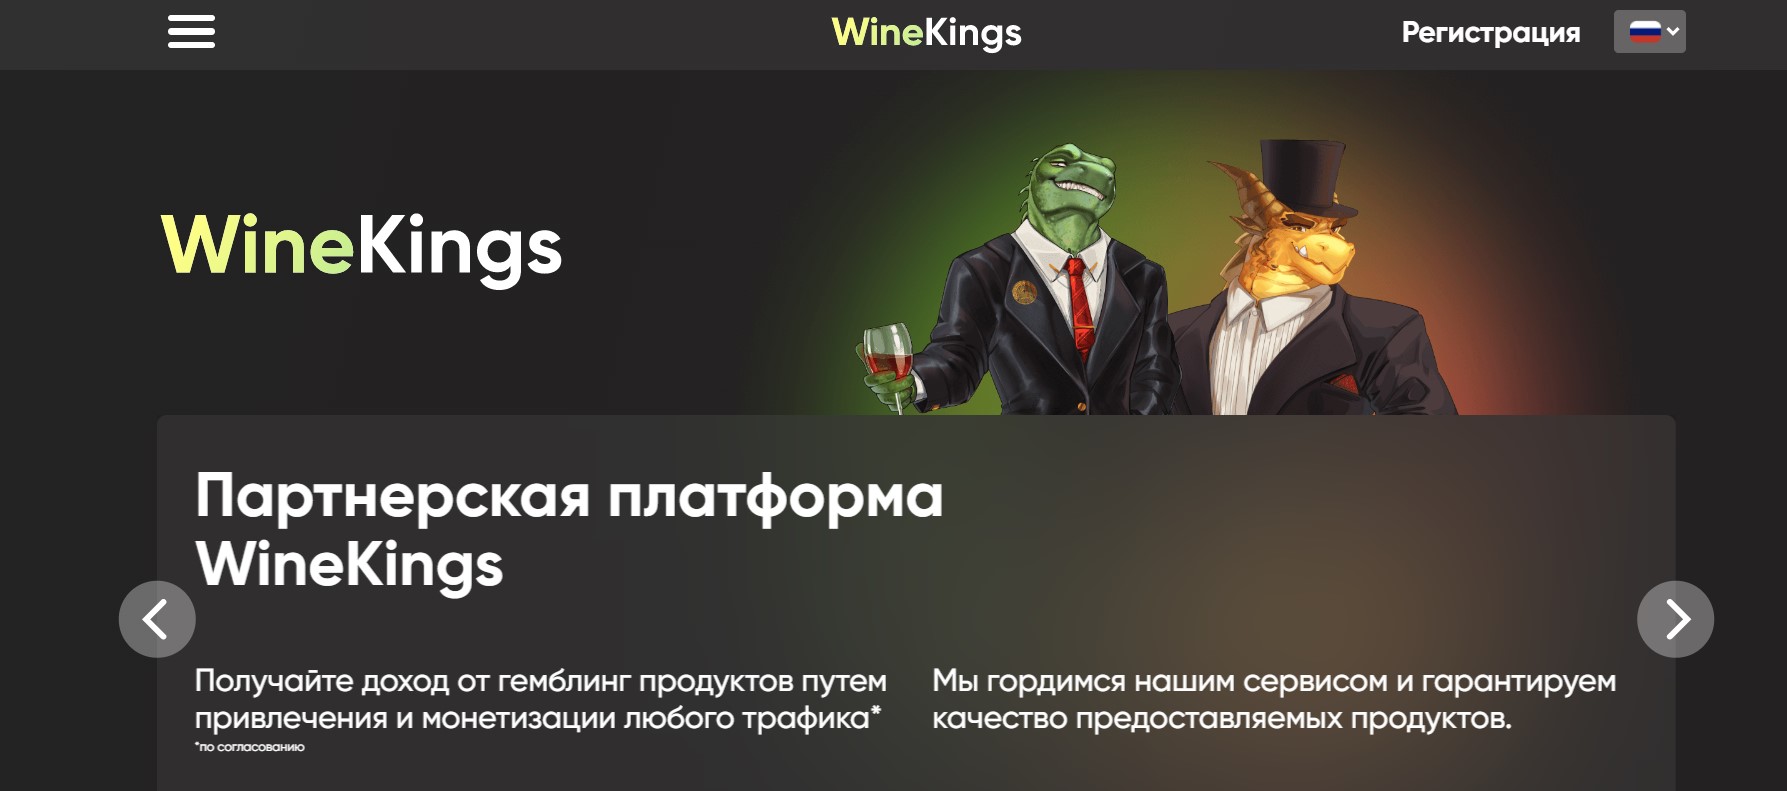 WineKings — отзывы и обзор на партнерскую программу